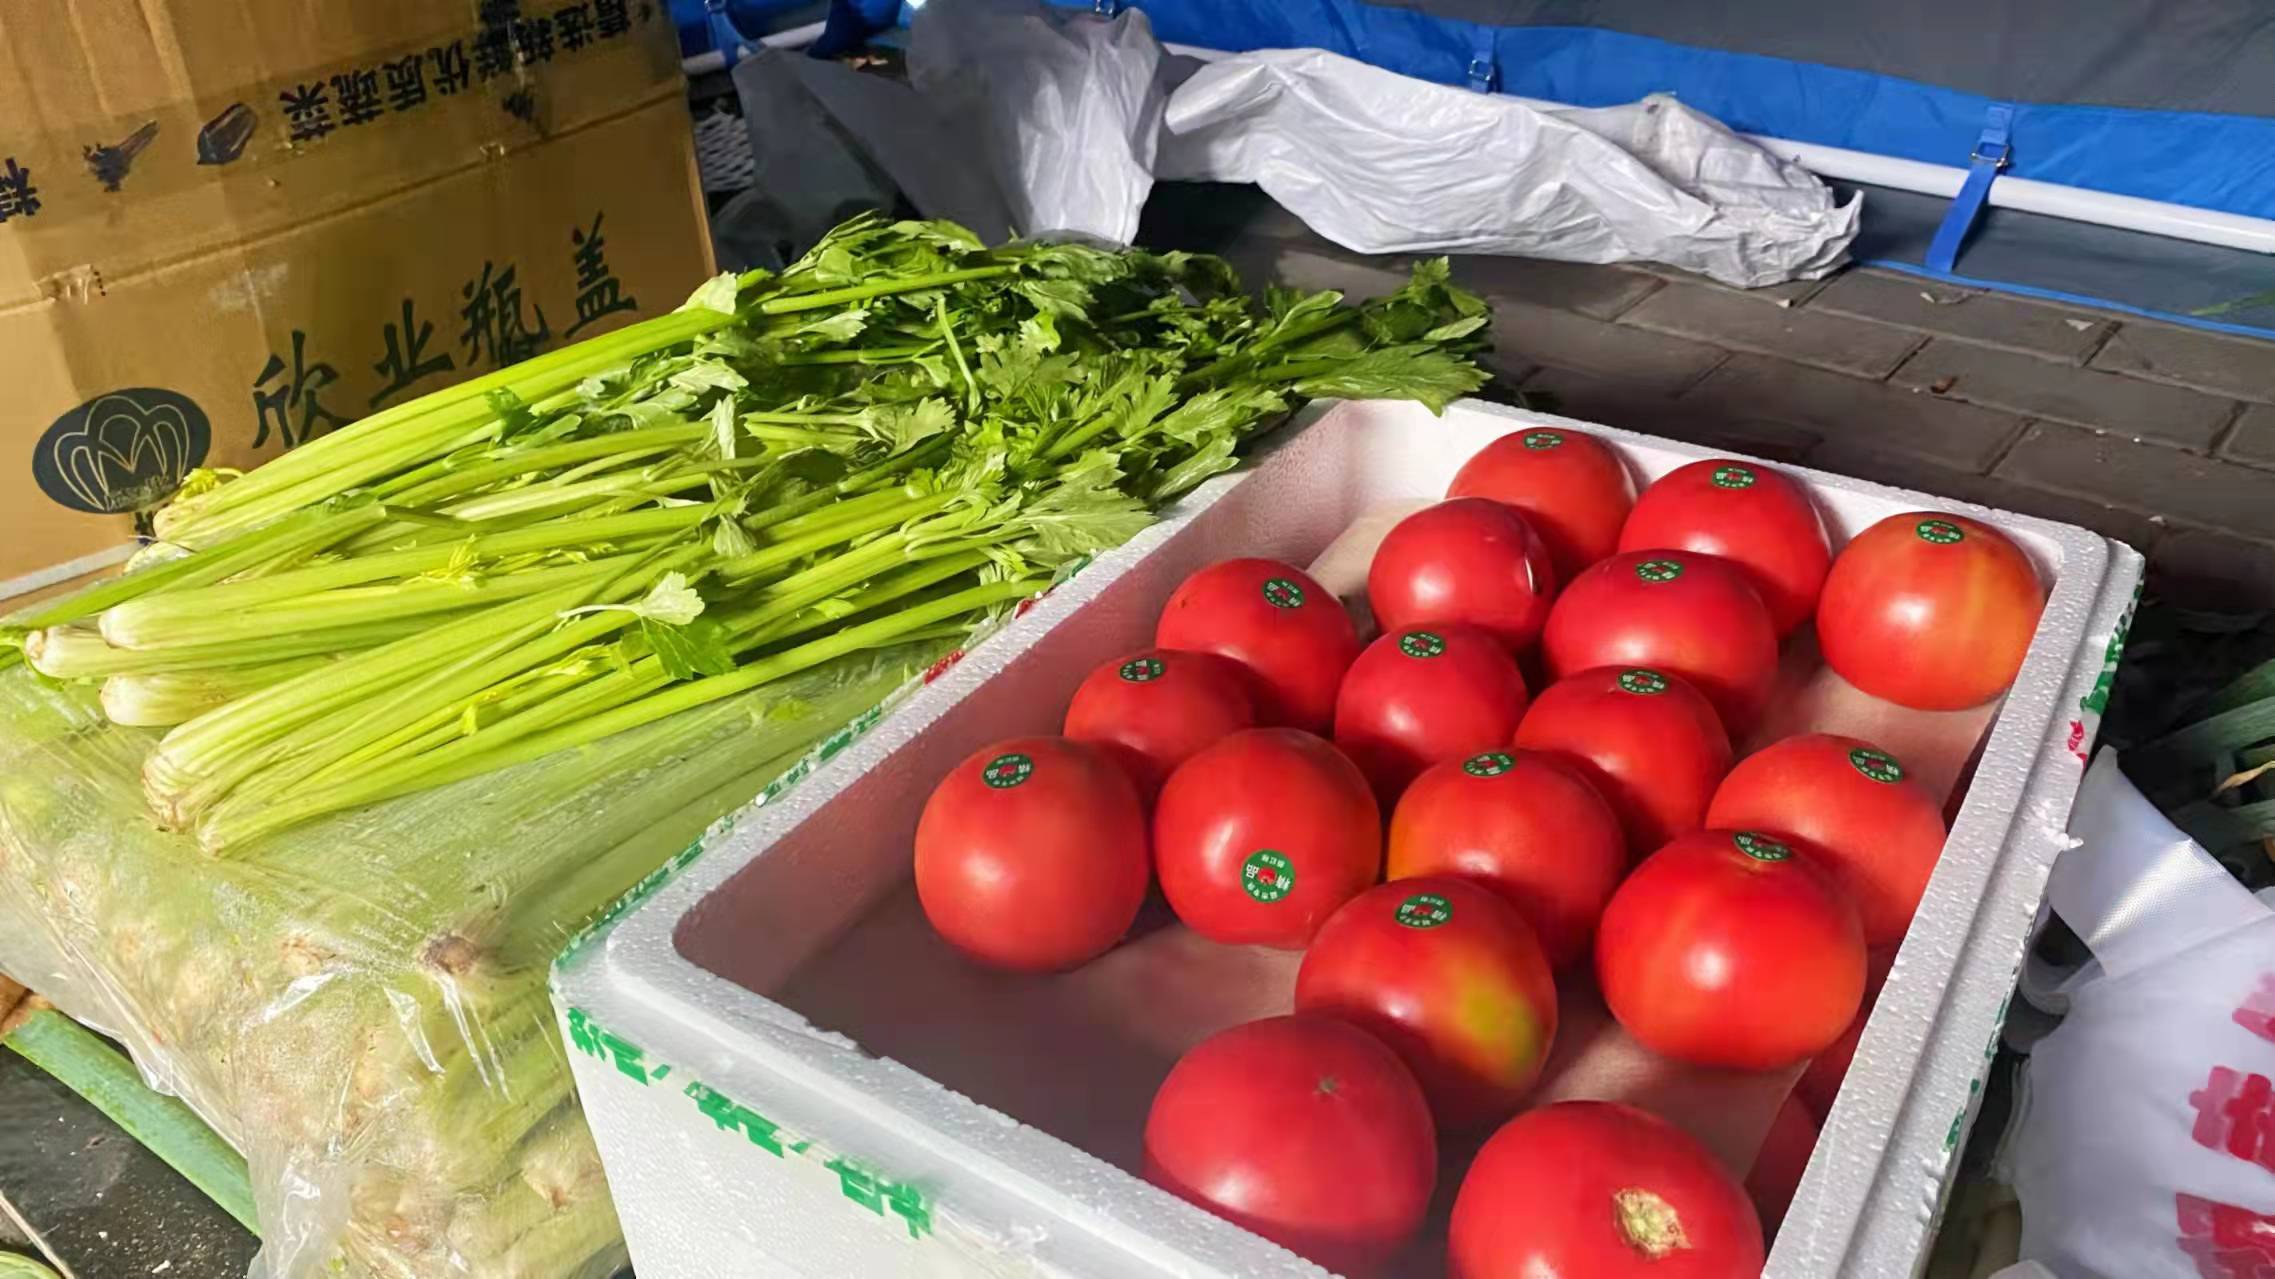 临潼区设立8个便民蔬菜直供点 平价商品送到家